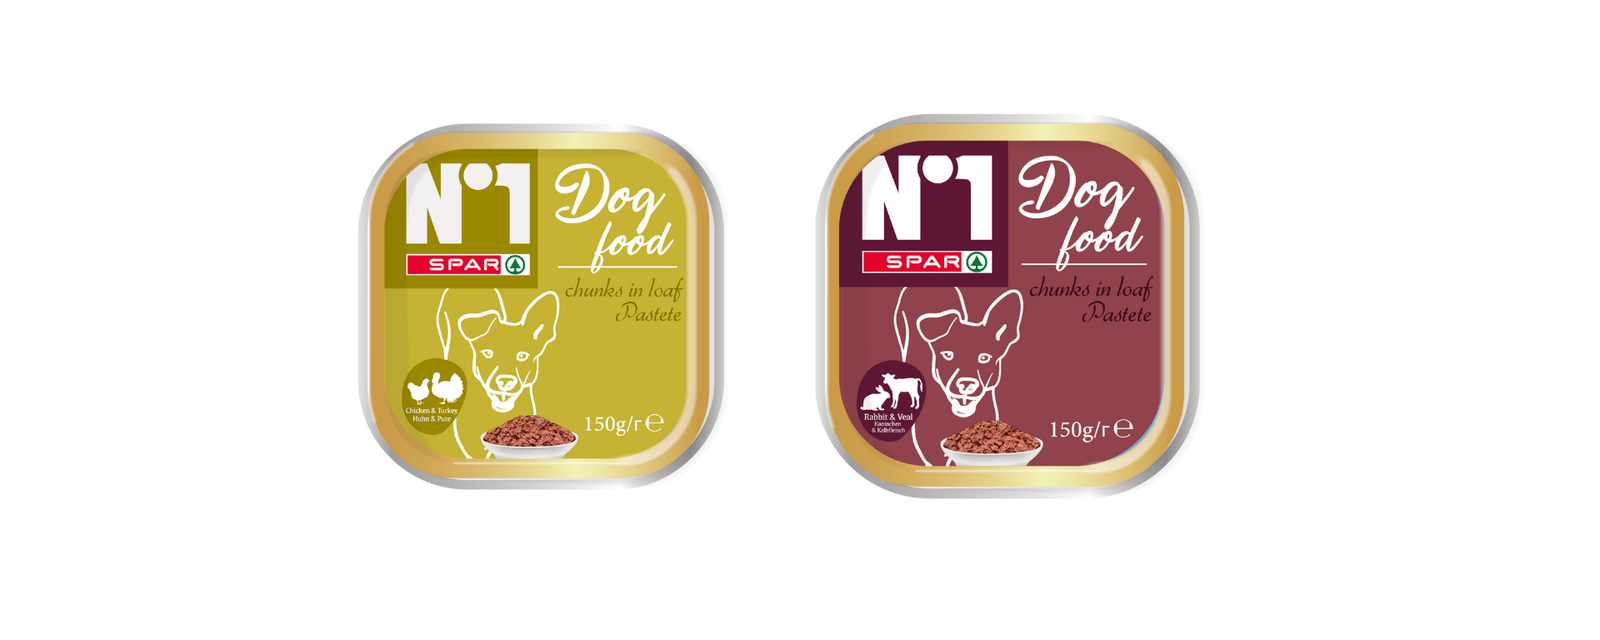 Spar launches own-brand pet food range